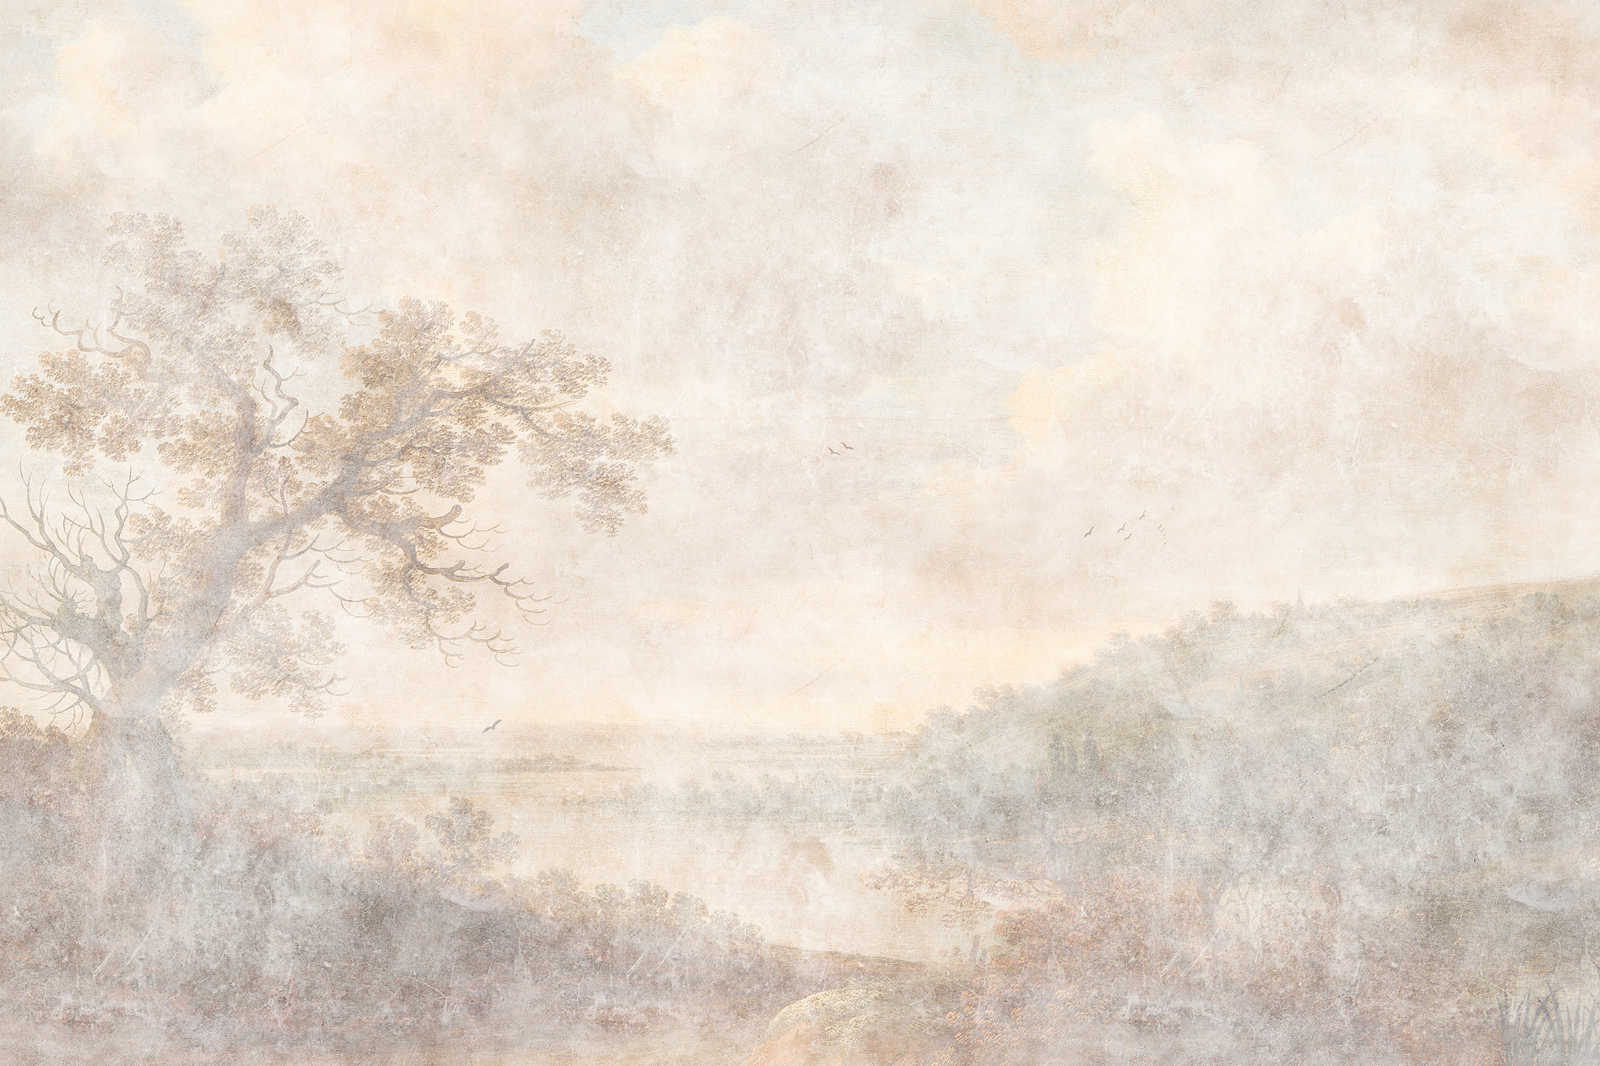             Romantic River 1 - Canvas schilderij Historische Kunst Design in Tweedehands Look - 1,20 m x 0,80 m
        